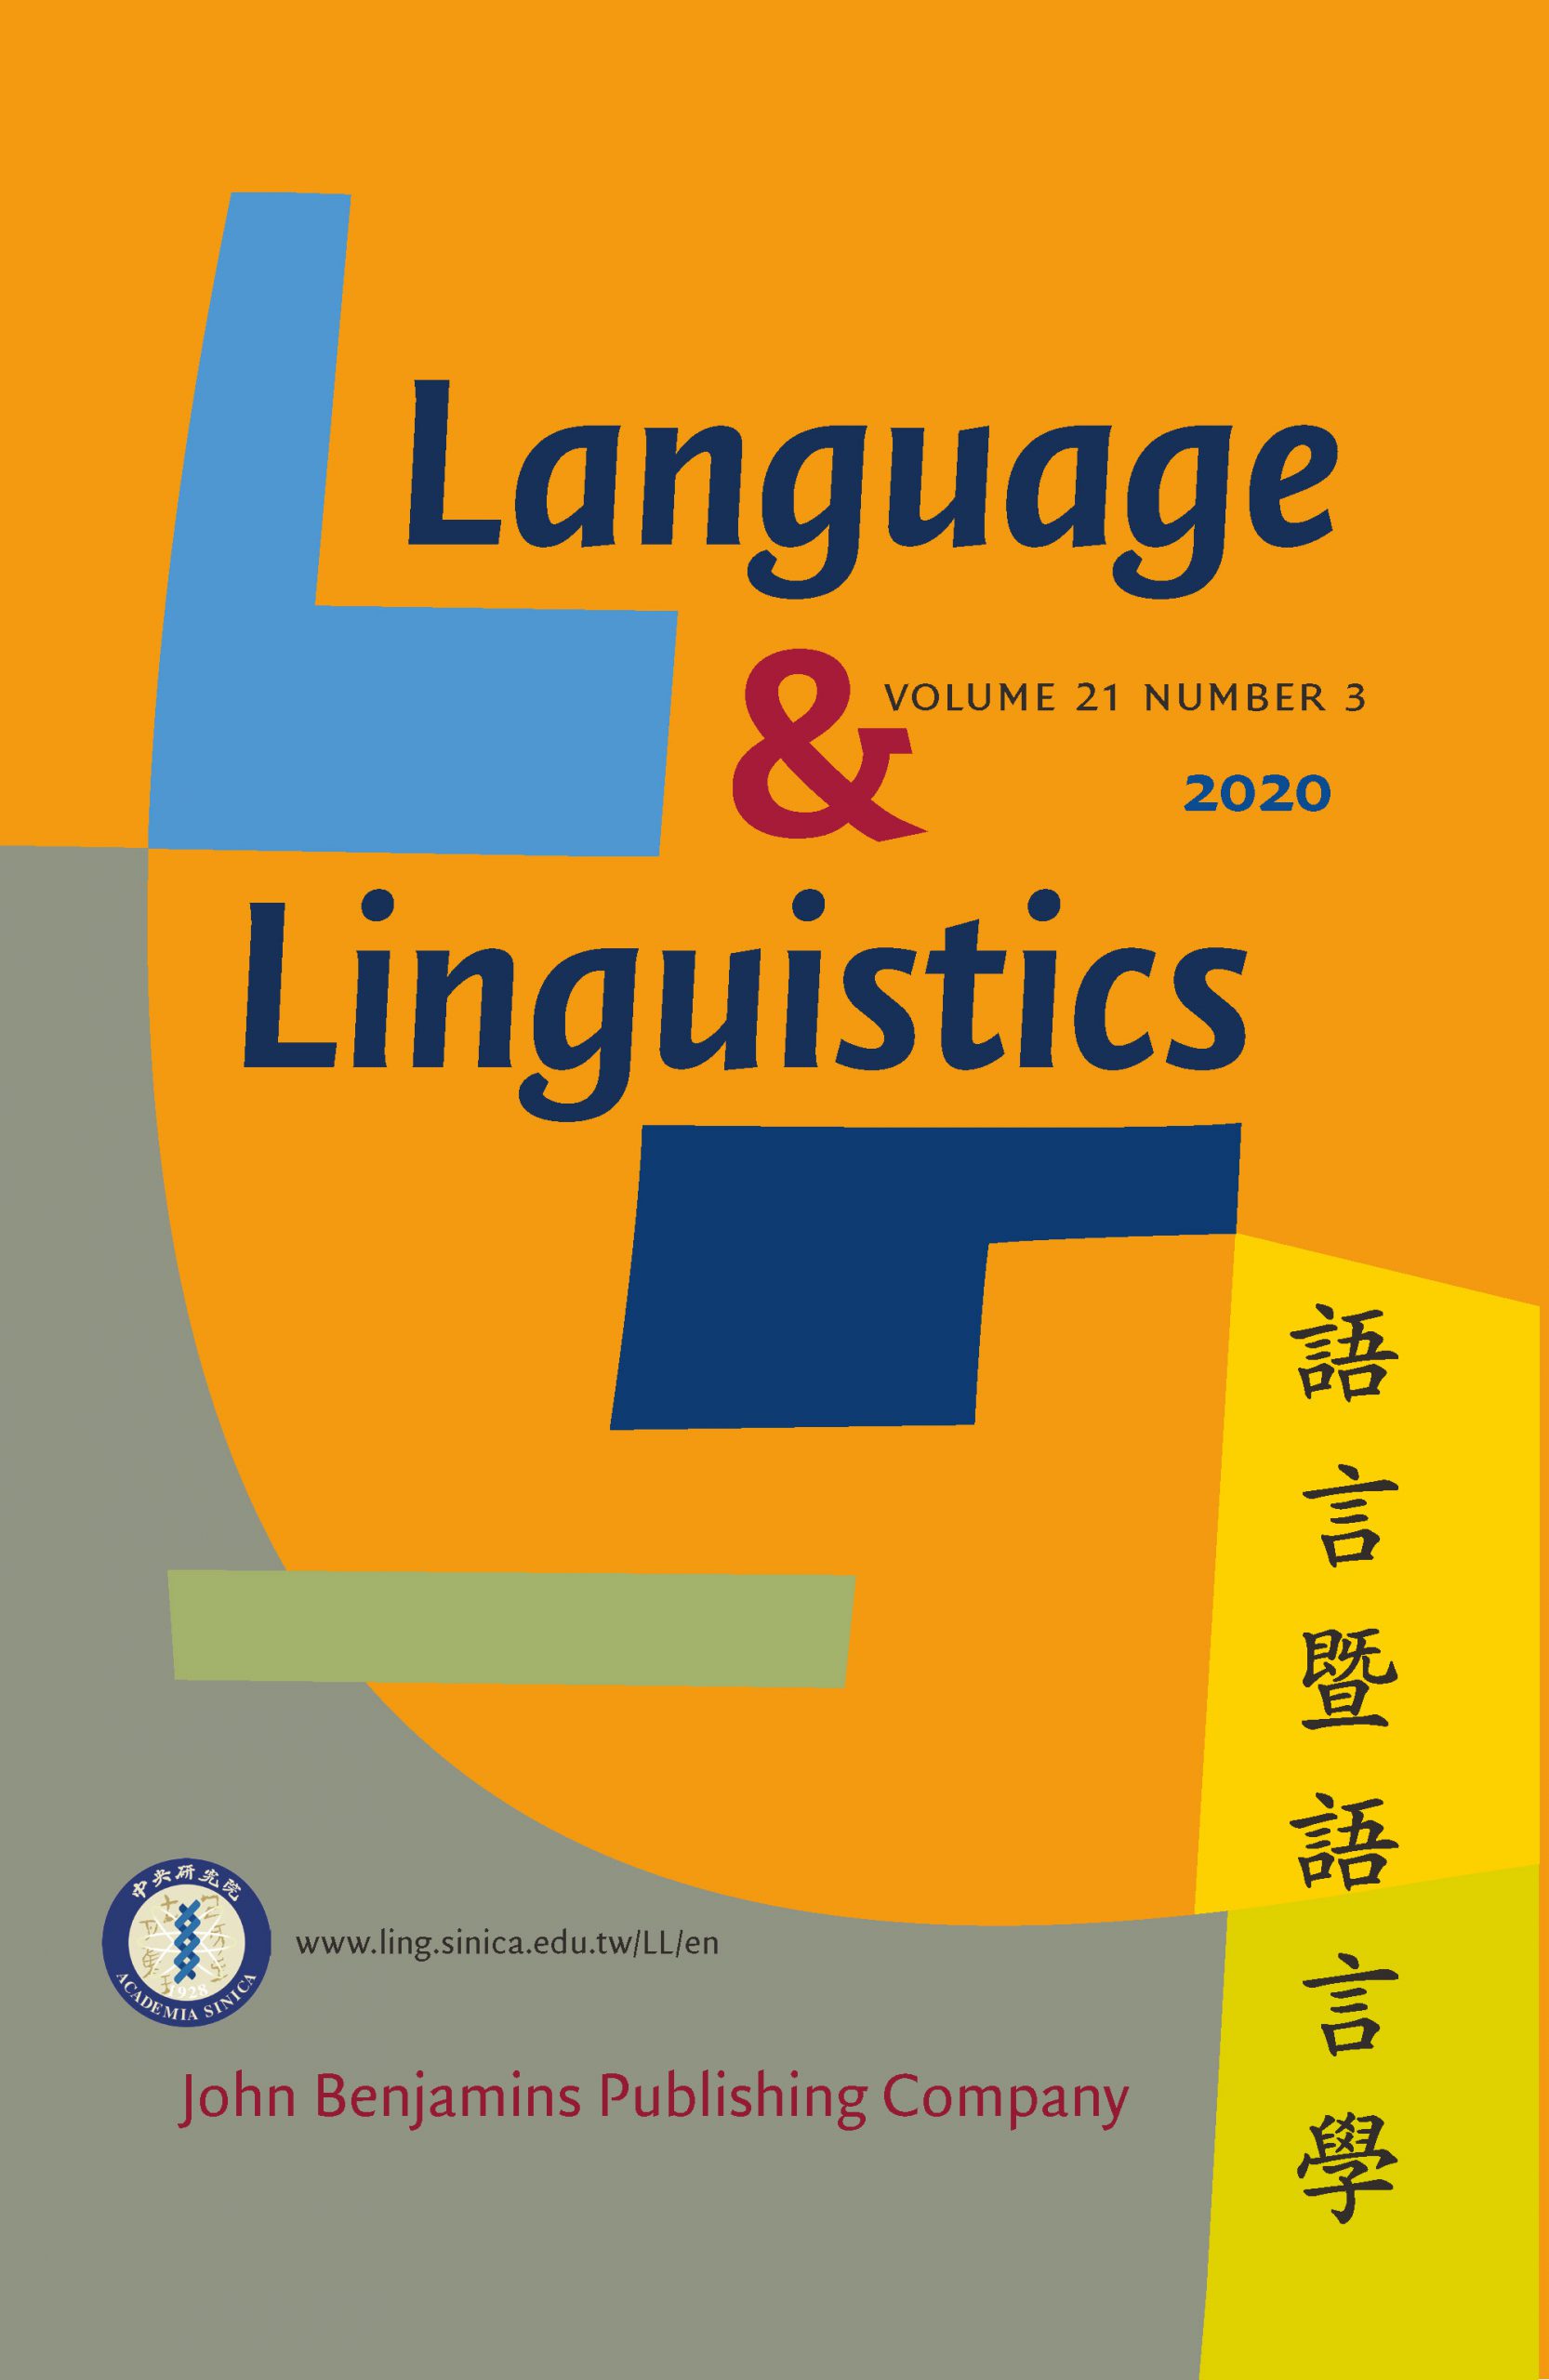 《語言暨語言學》第21卷第3期已出版